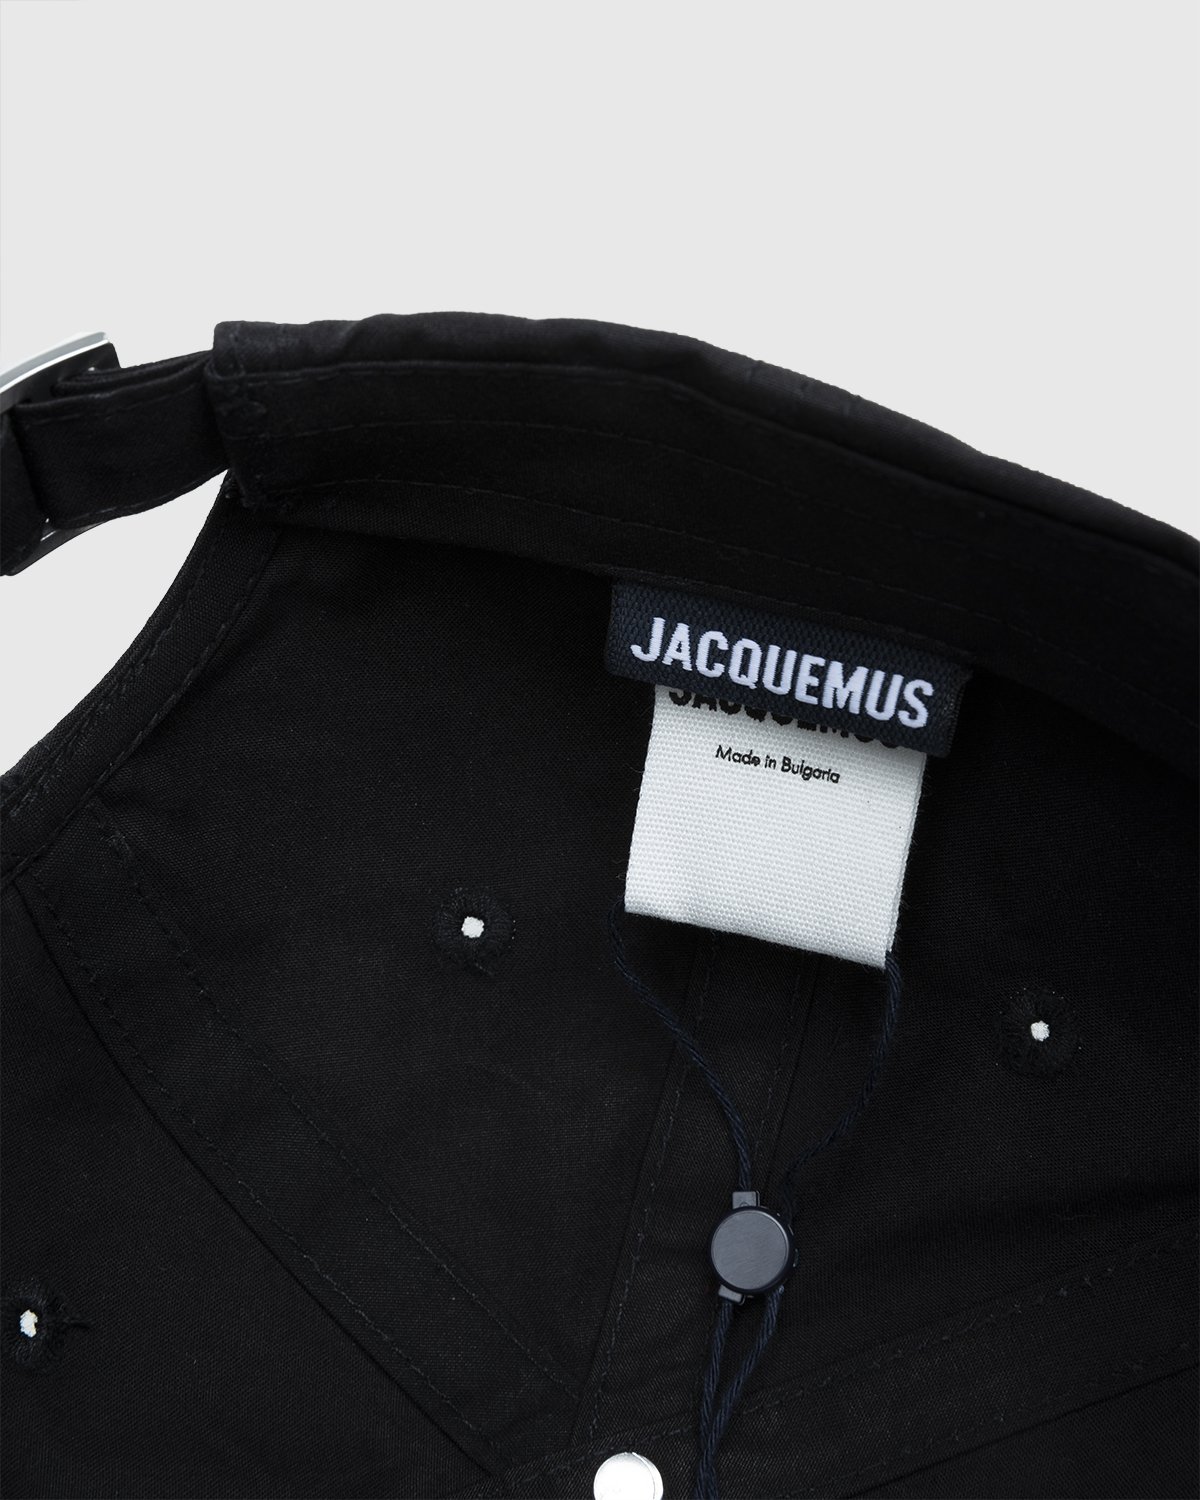 JACQUEMUS - La Casquette Jacquemus Black - Accessories - Black - Image 6